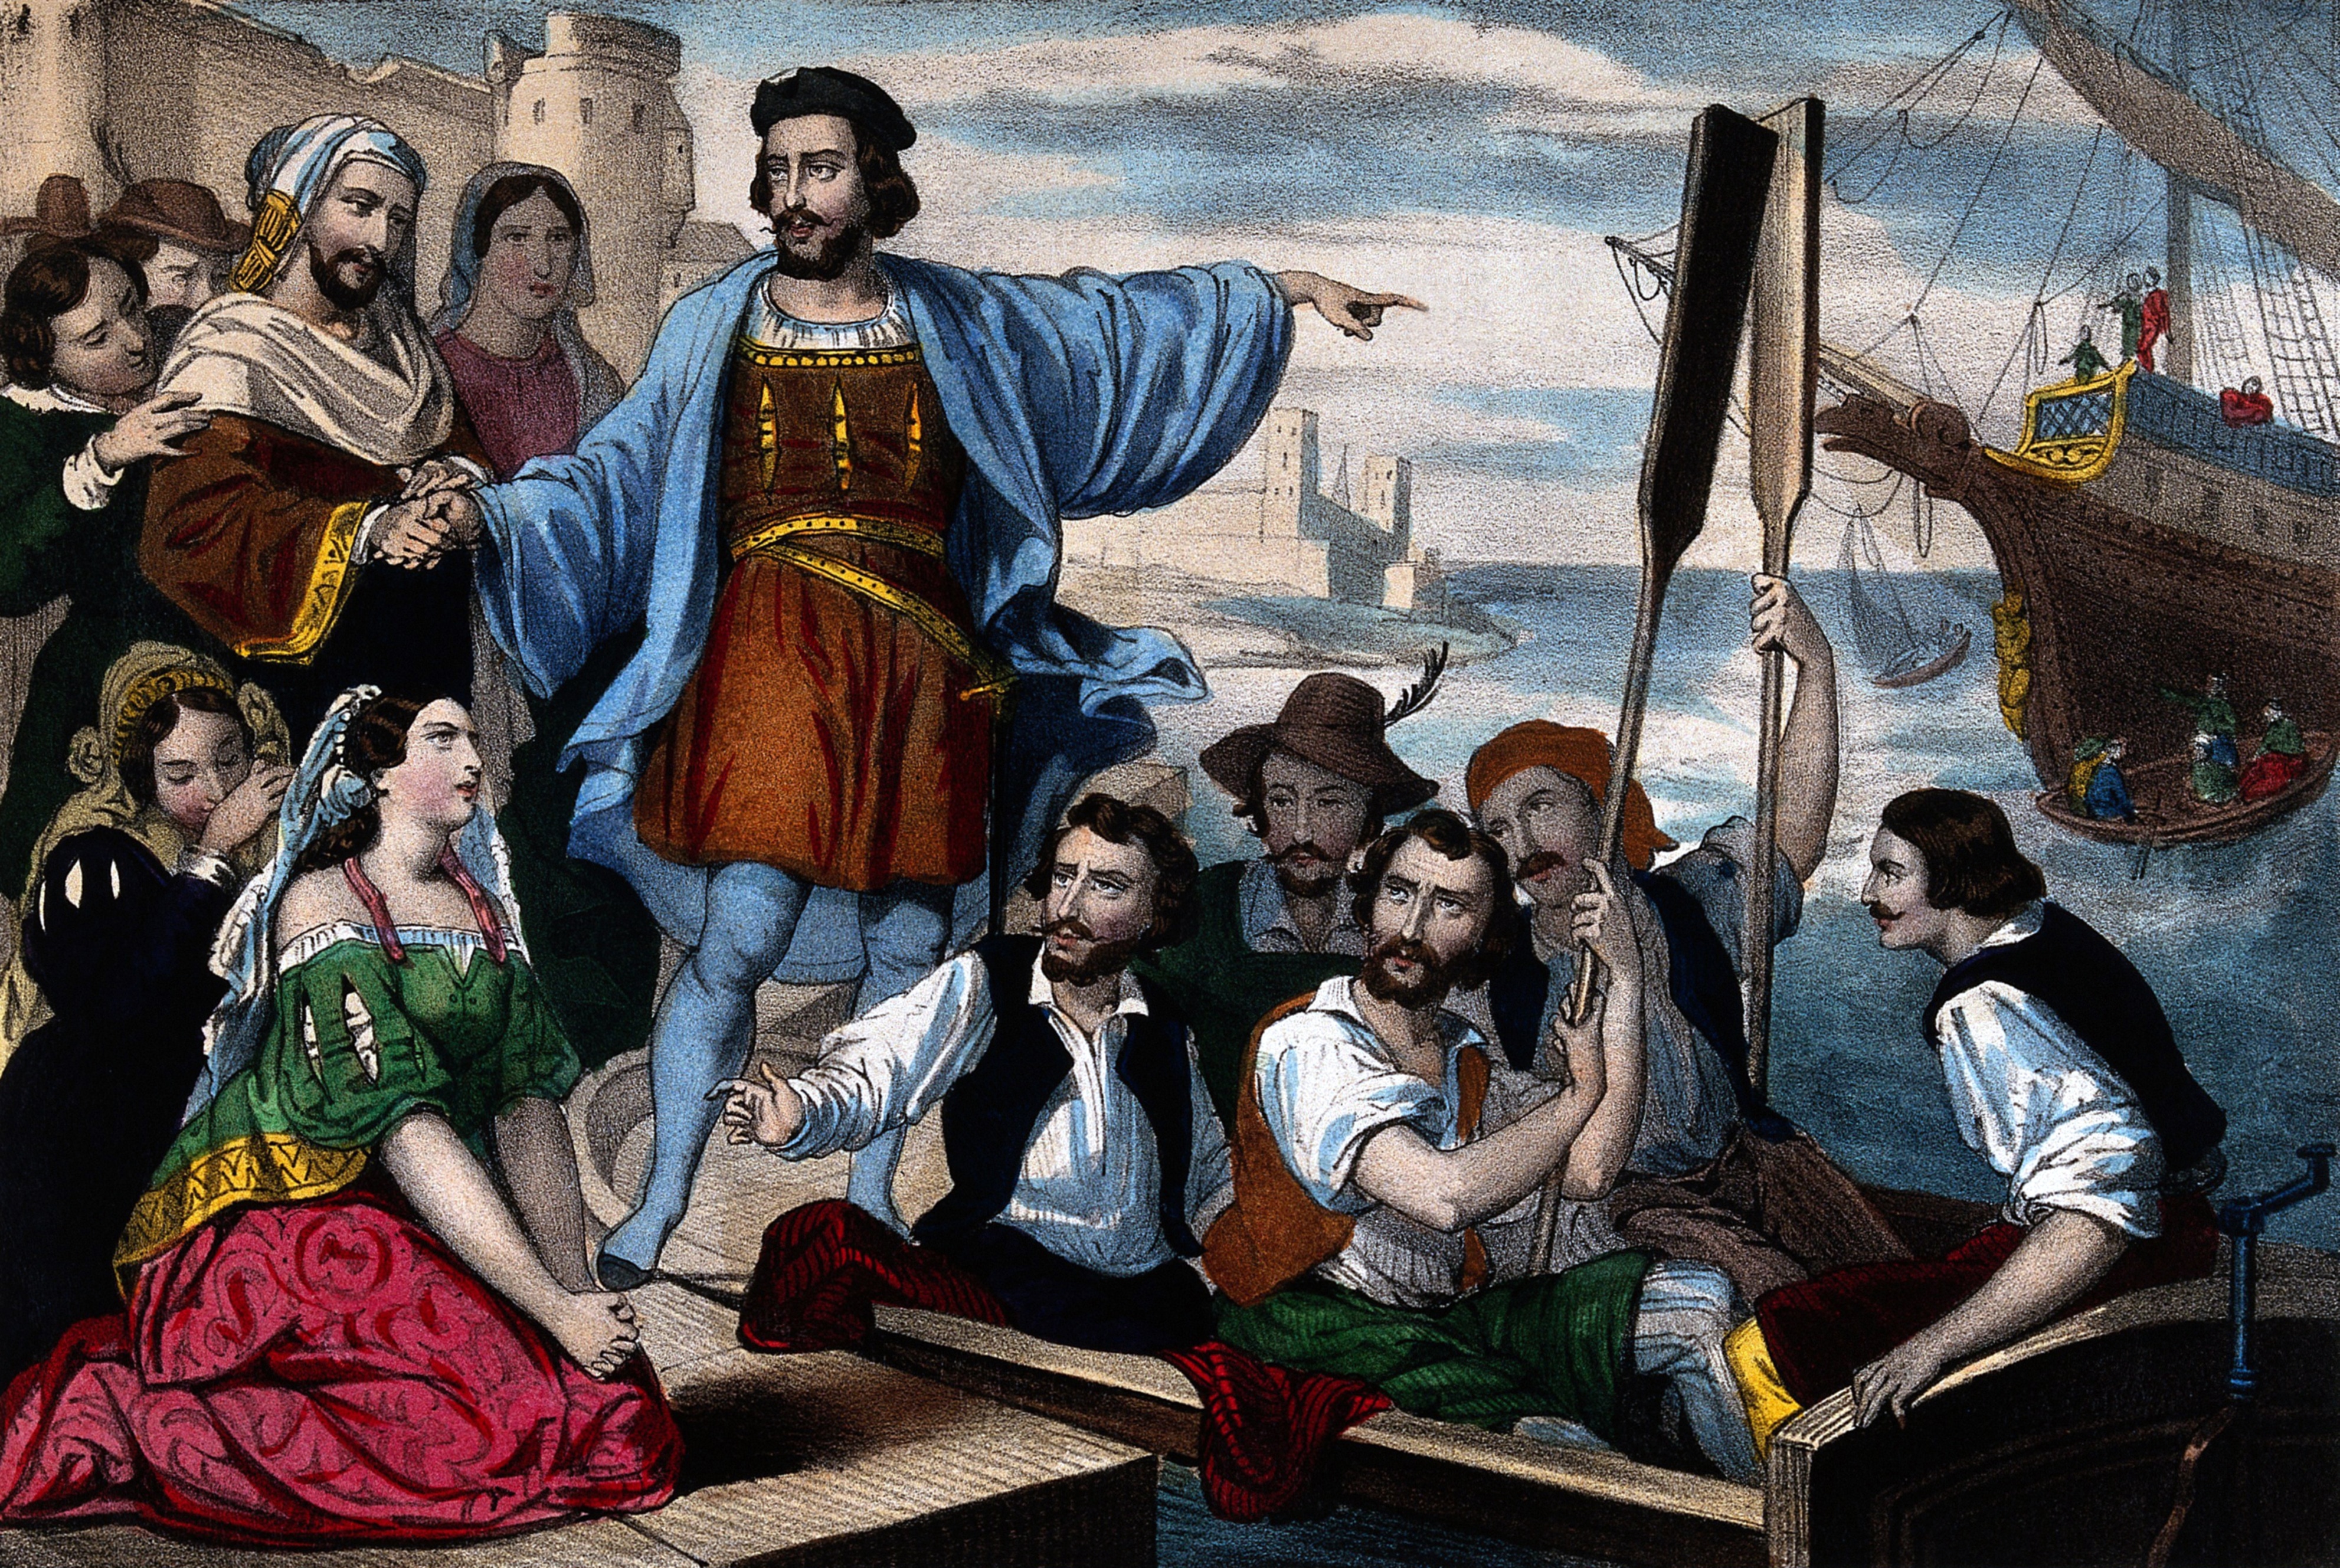 Una stampa del 1500 circa, rappresenta la partenza di Colombo per il suo viaggio verso l'America